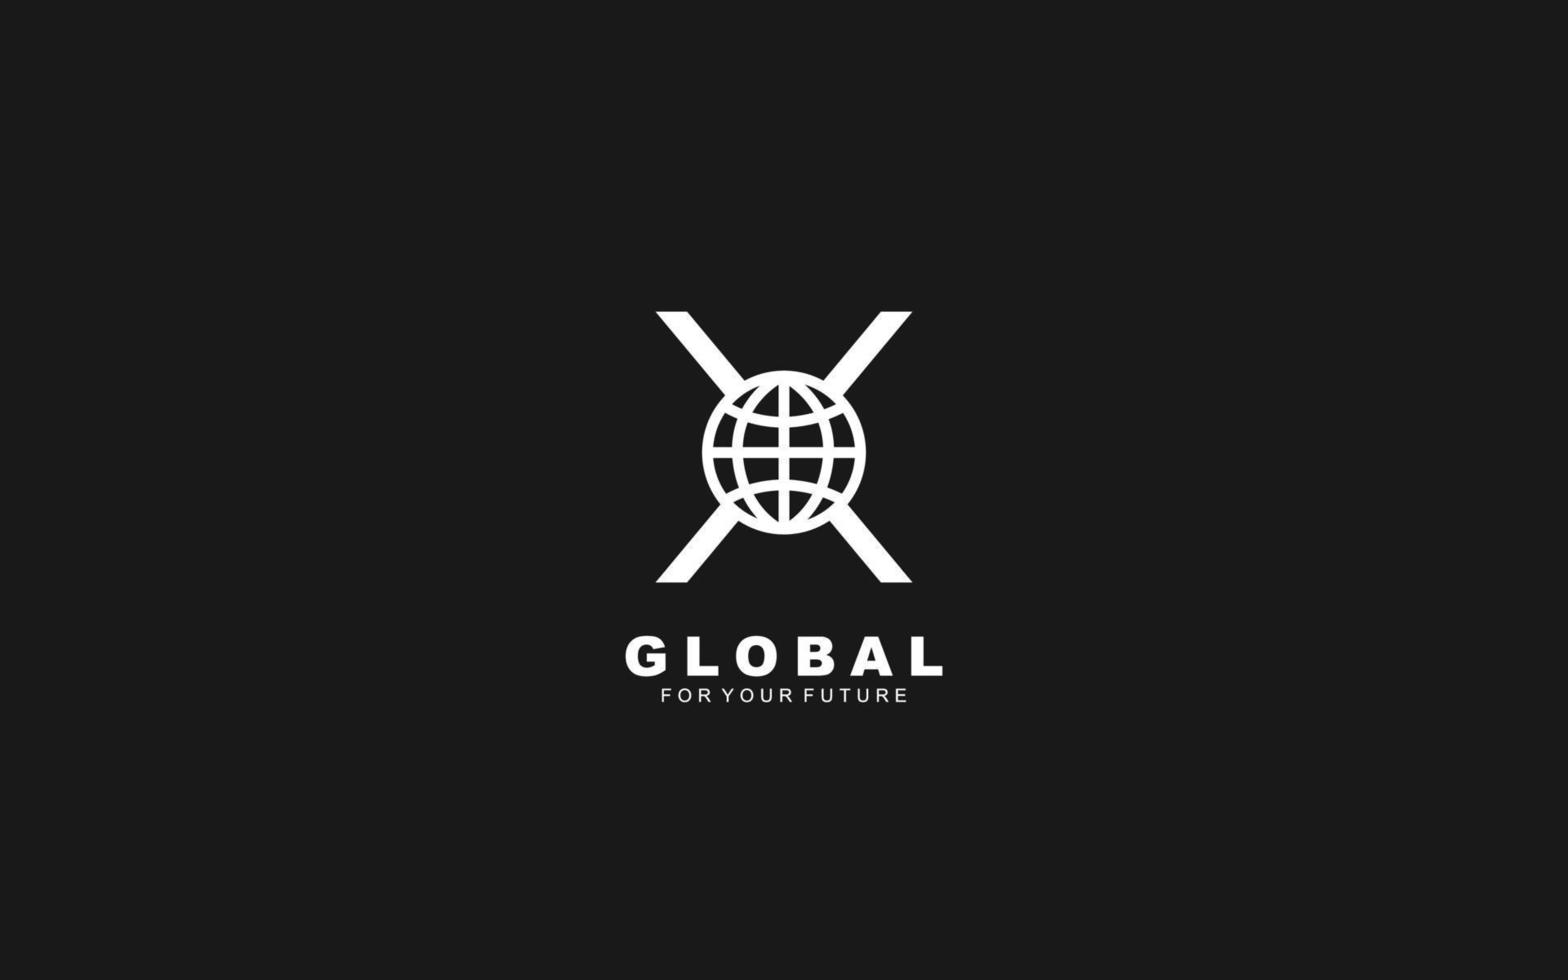 x-Logo-Globus für Identität. Netzwerkvorlagen-Vektorillustration für Ihre Marke. vektor